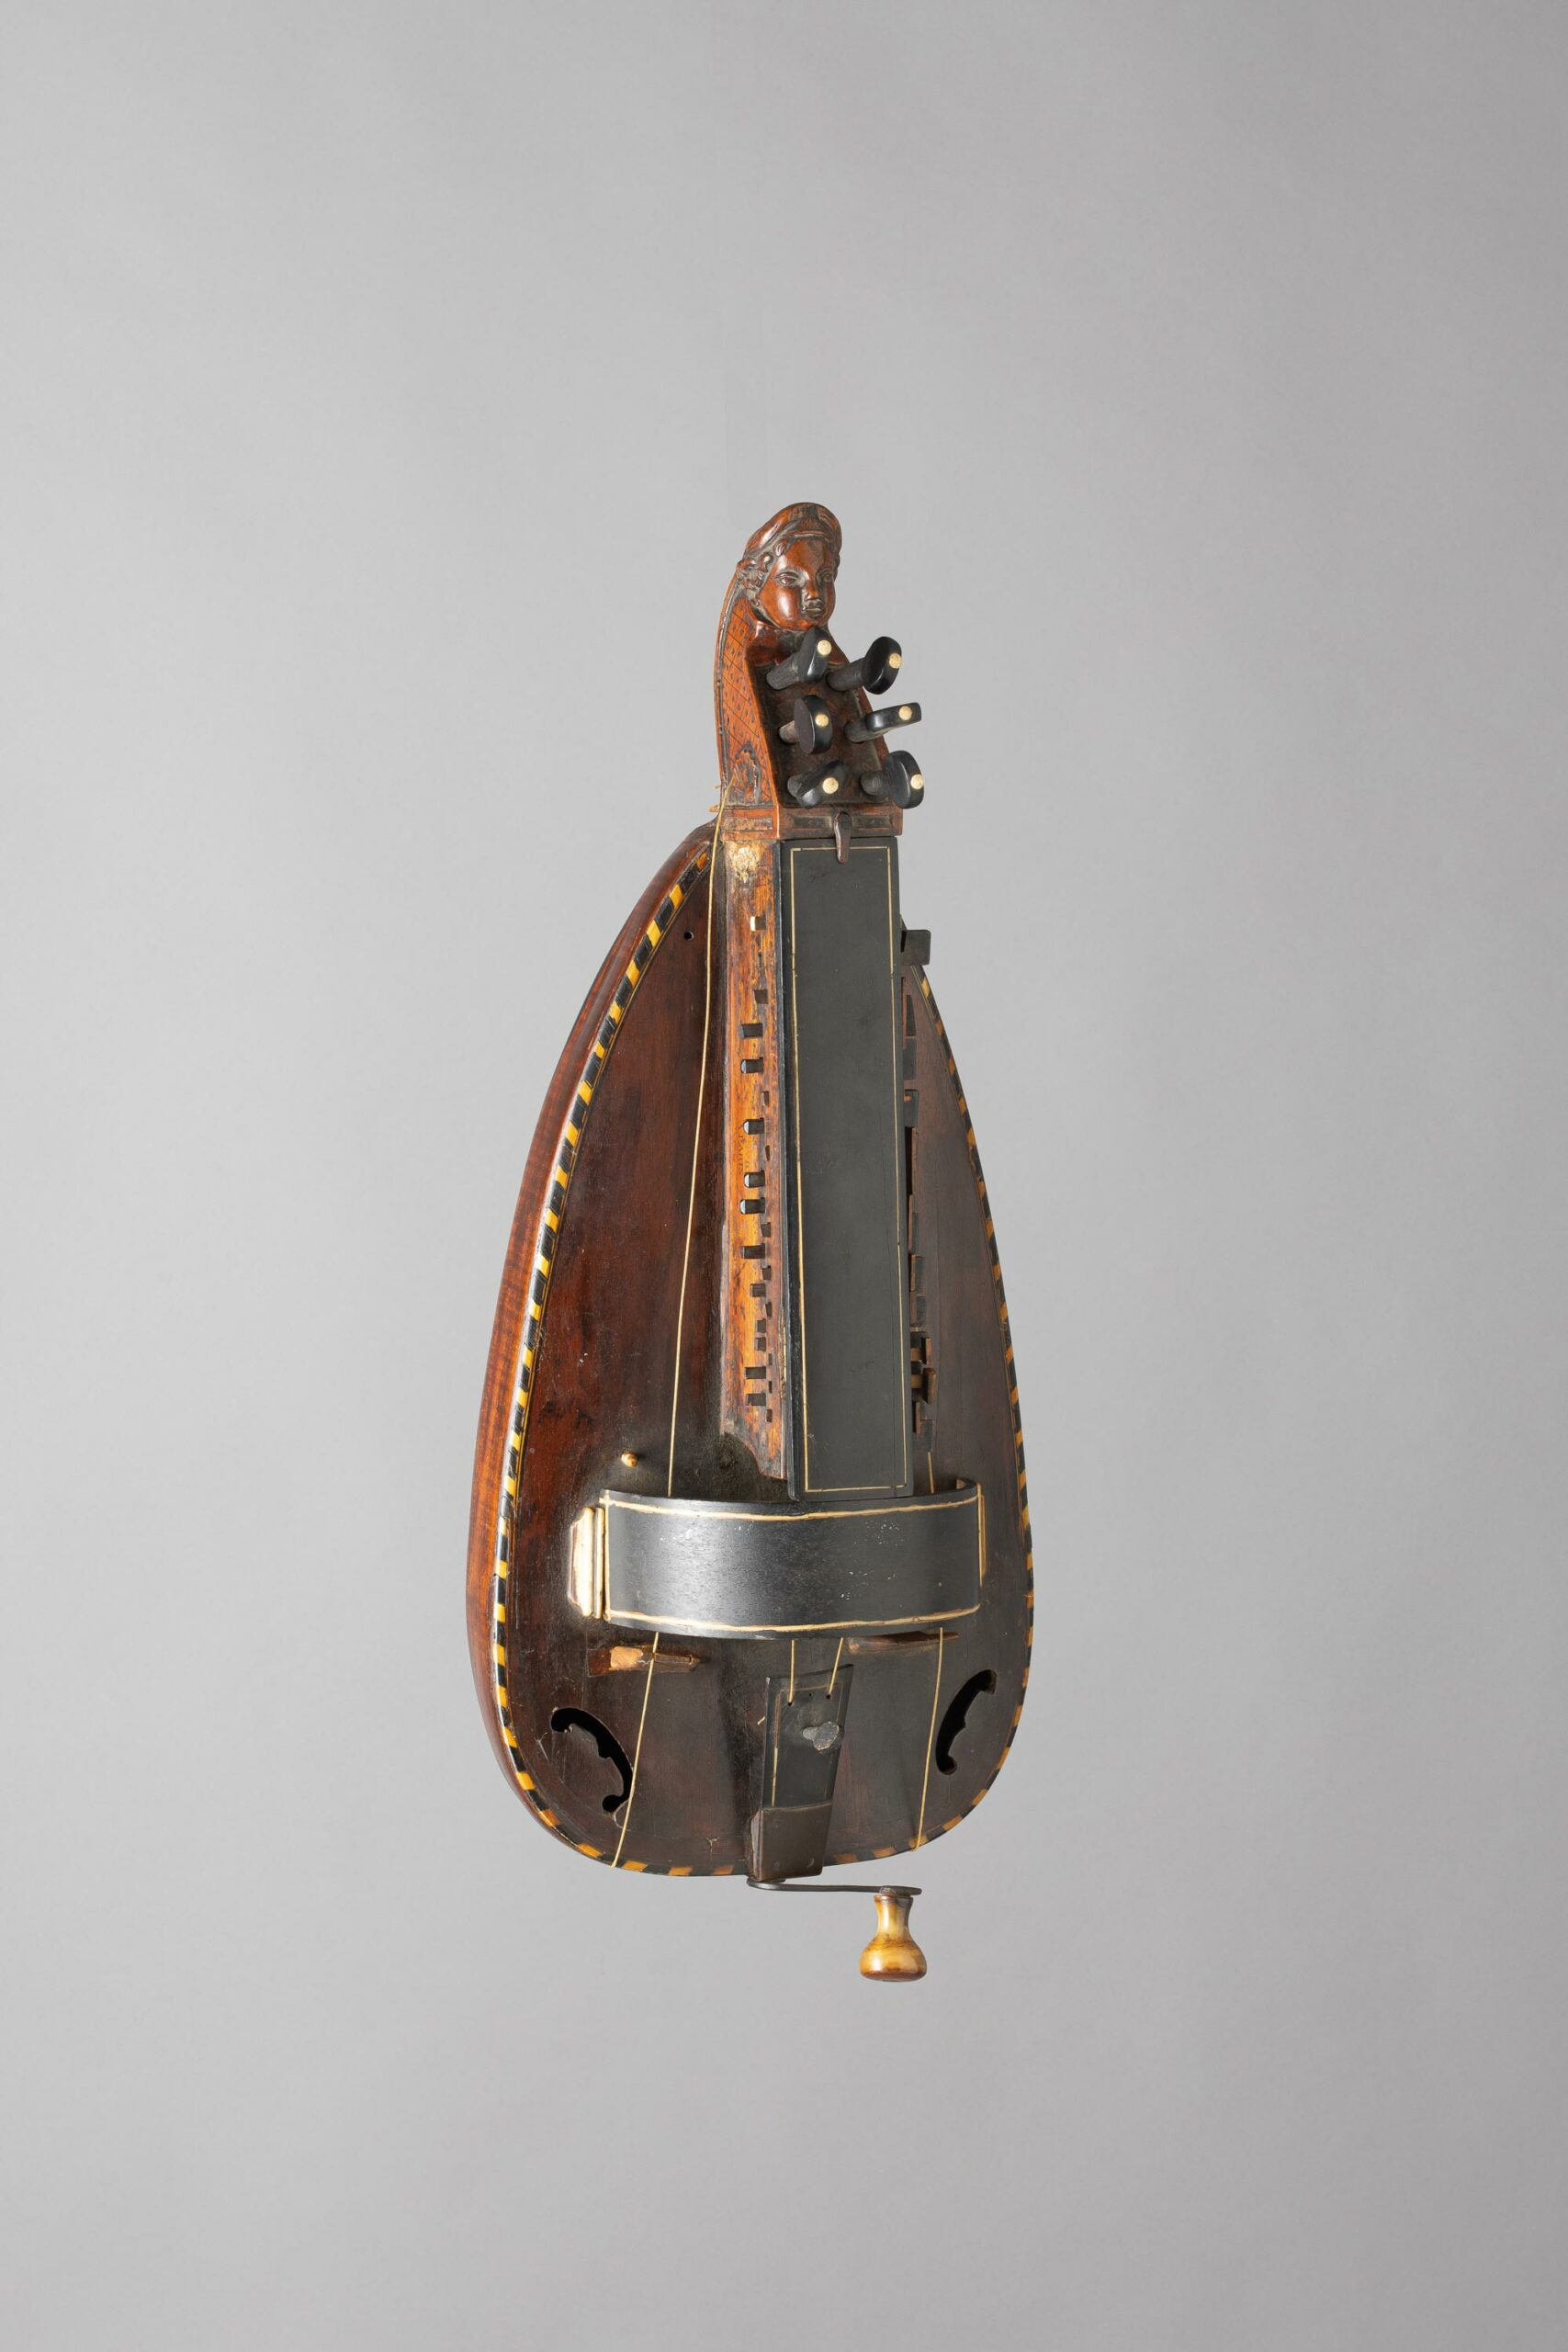 Vielle ronde de François FEURY - Collection Calas - Instrument mis en vente par Vichy Enchères le 5 novembre 2022 © C. Darbelet